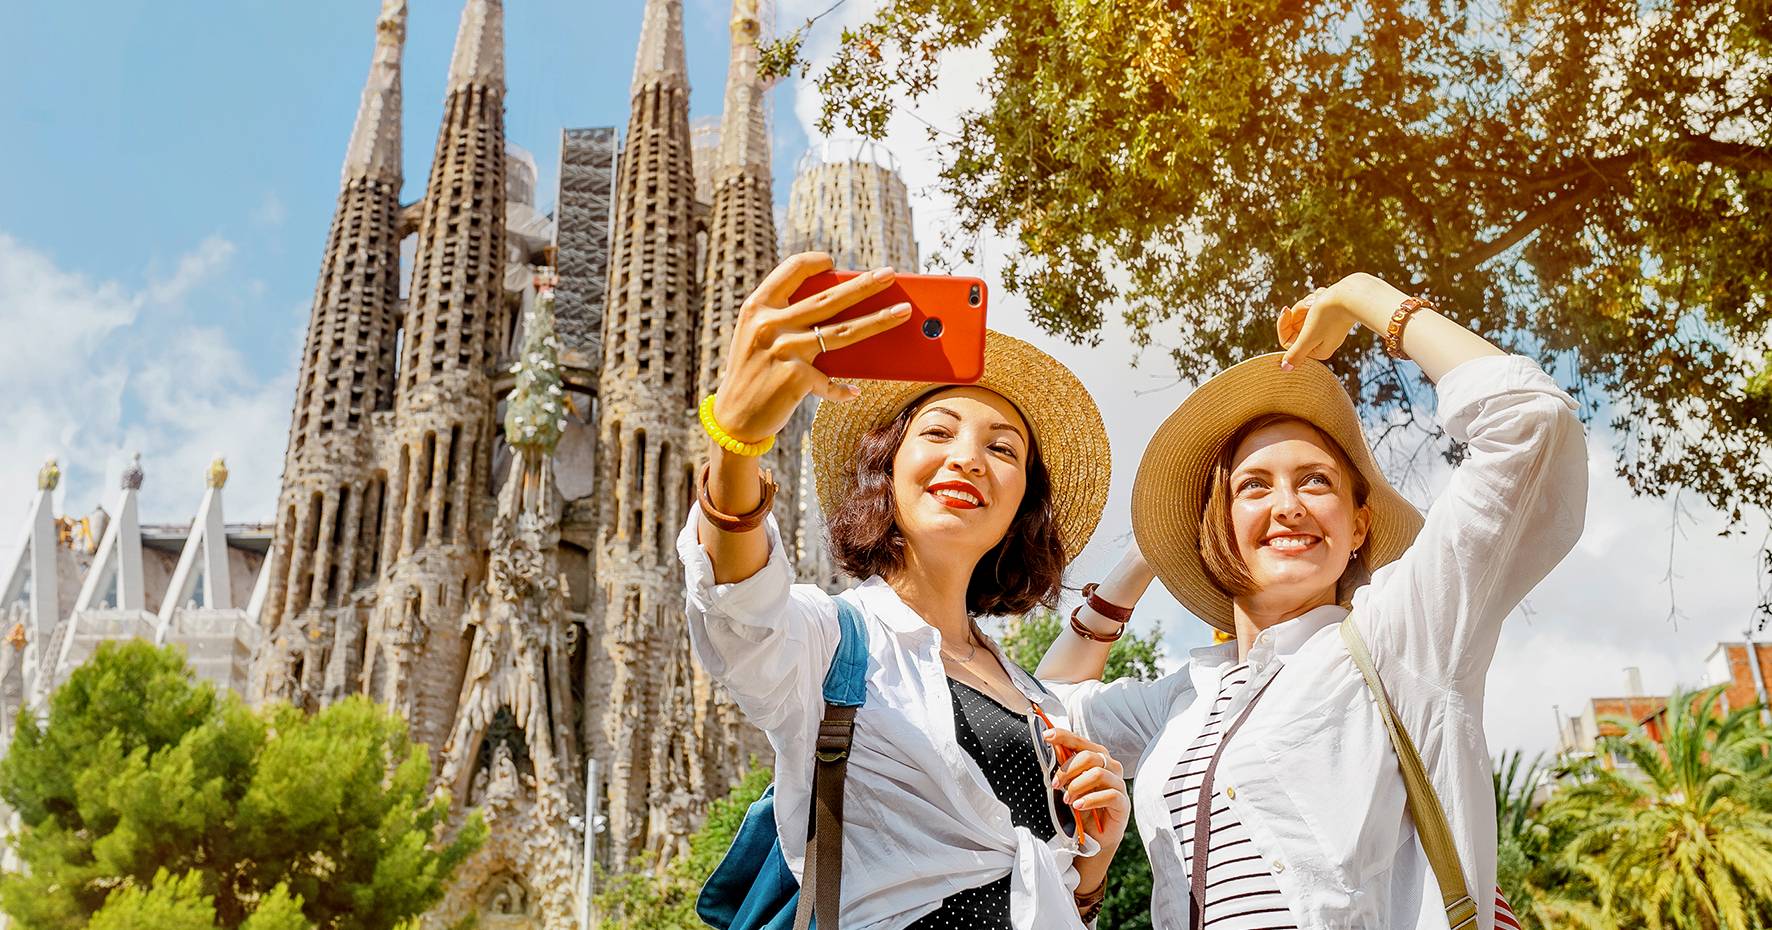 El turismo se consolida como motor de la economía en España